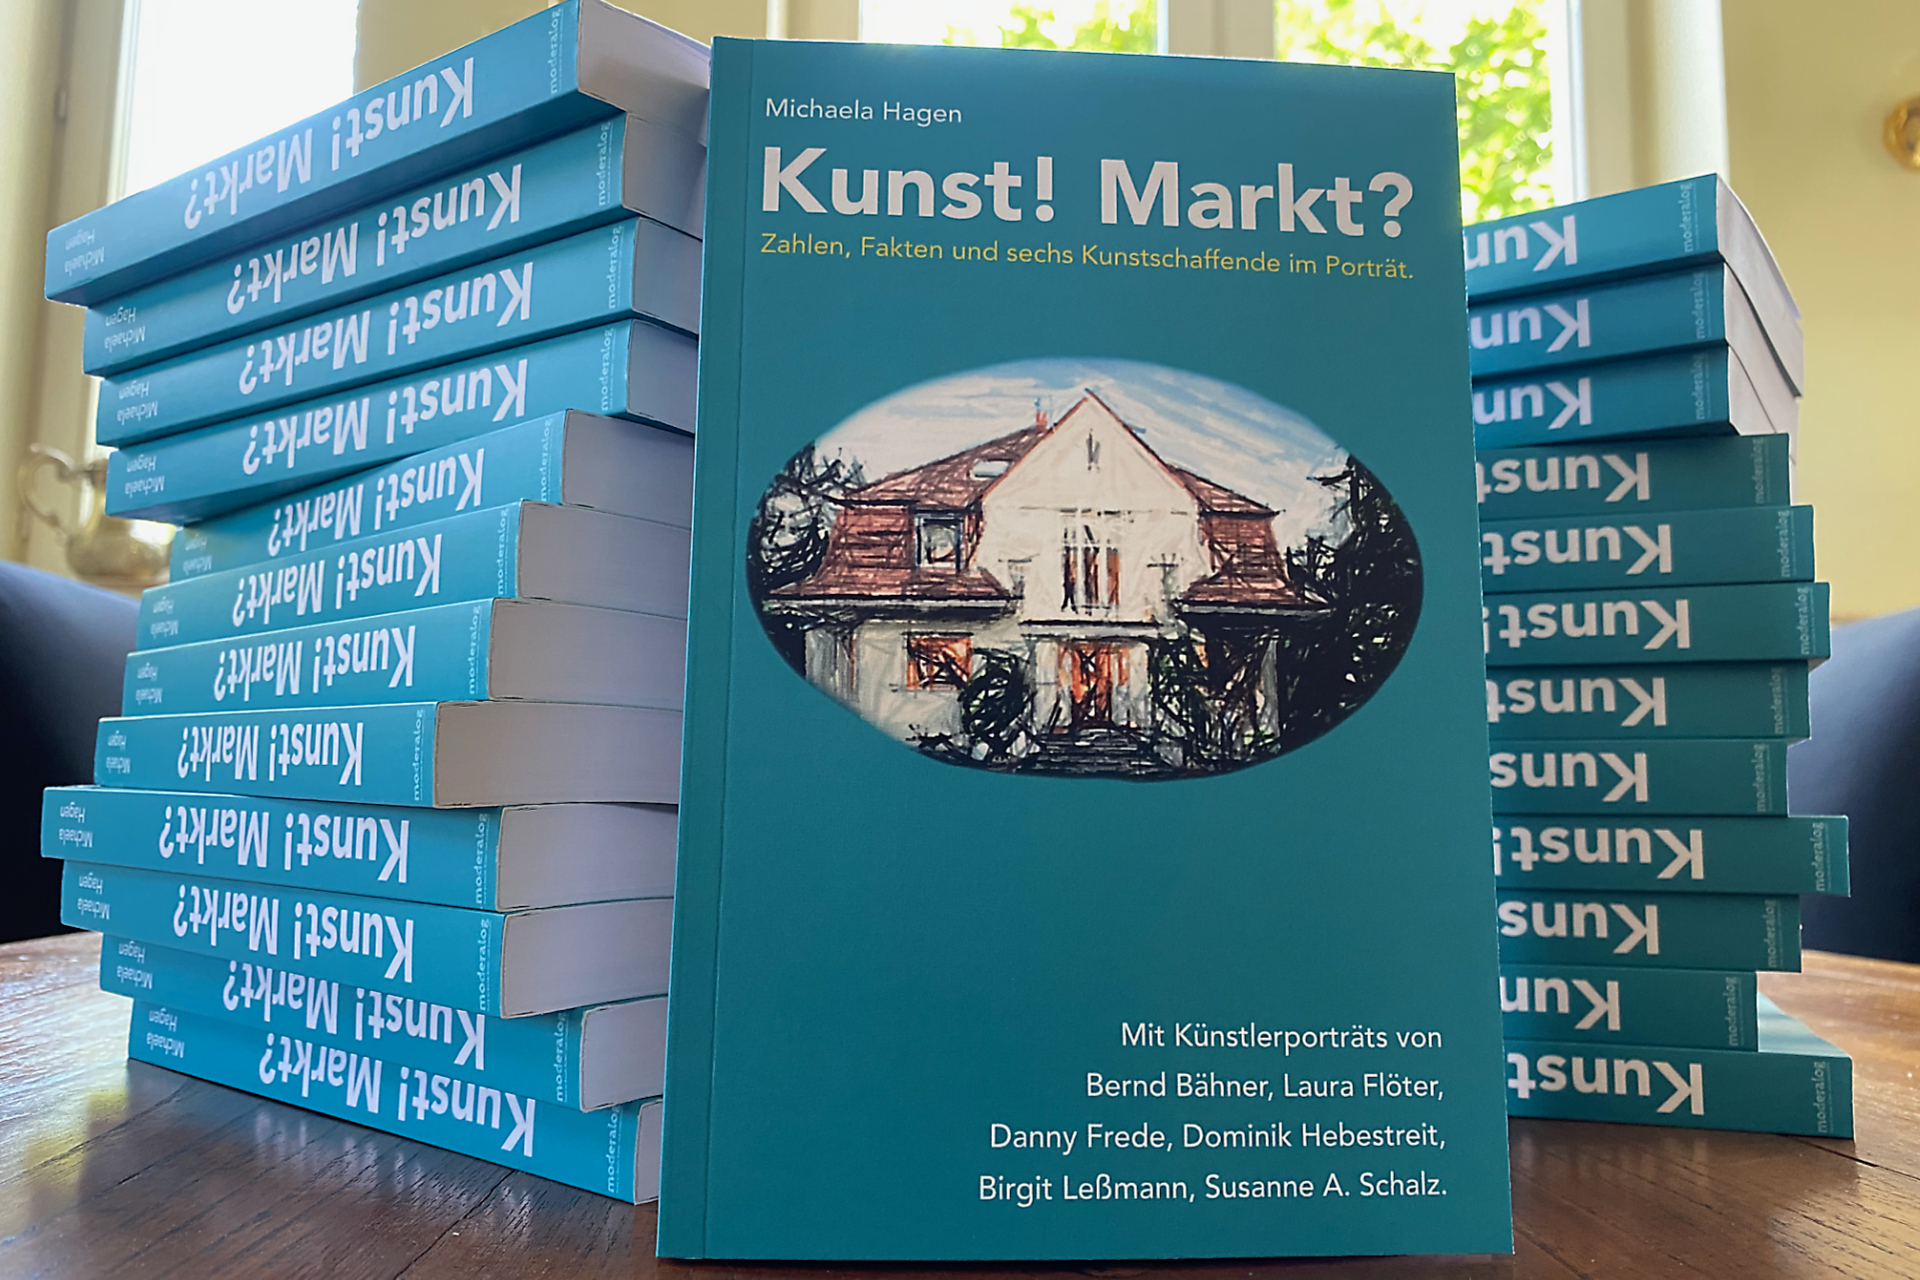 Buch von Michaela Hagen, "Kunst! Markt?"